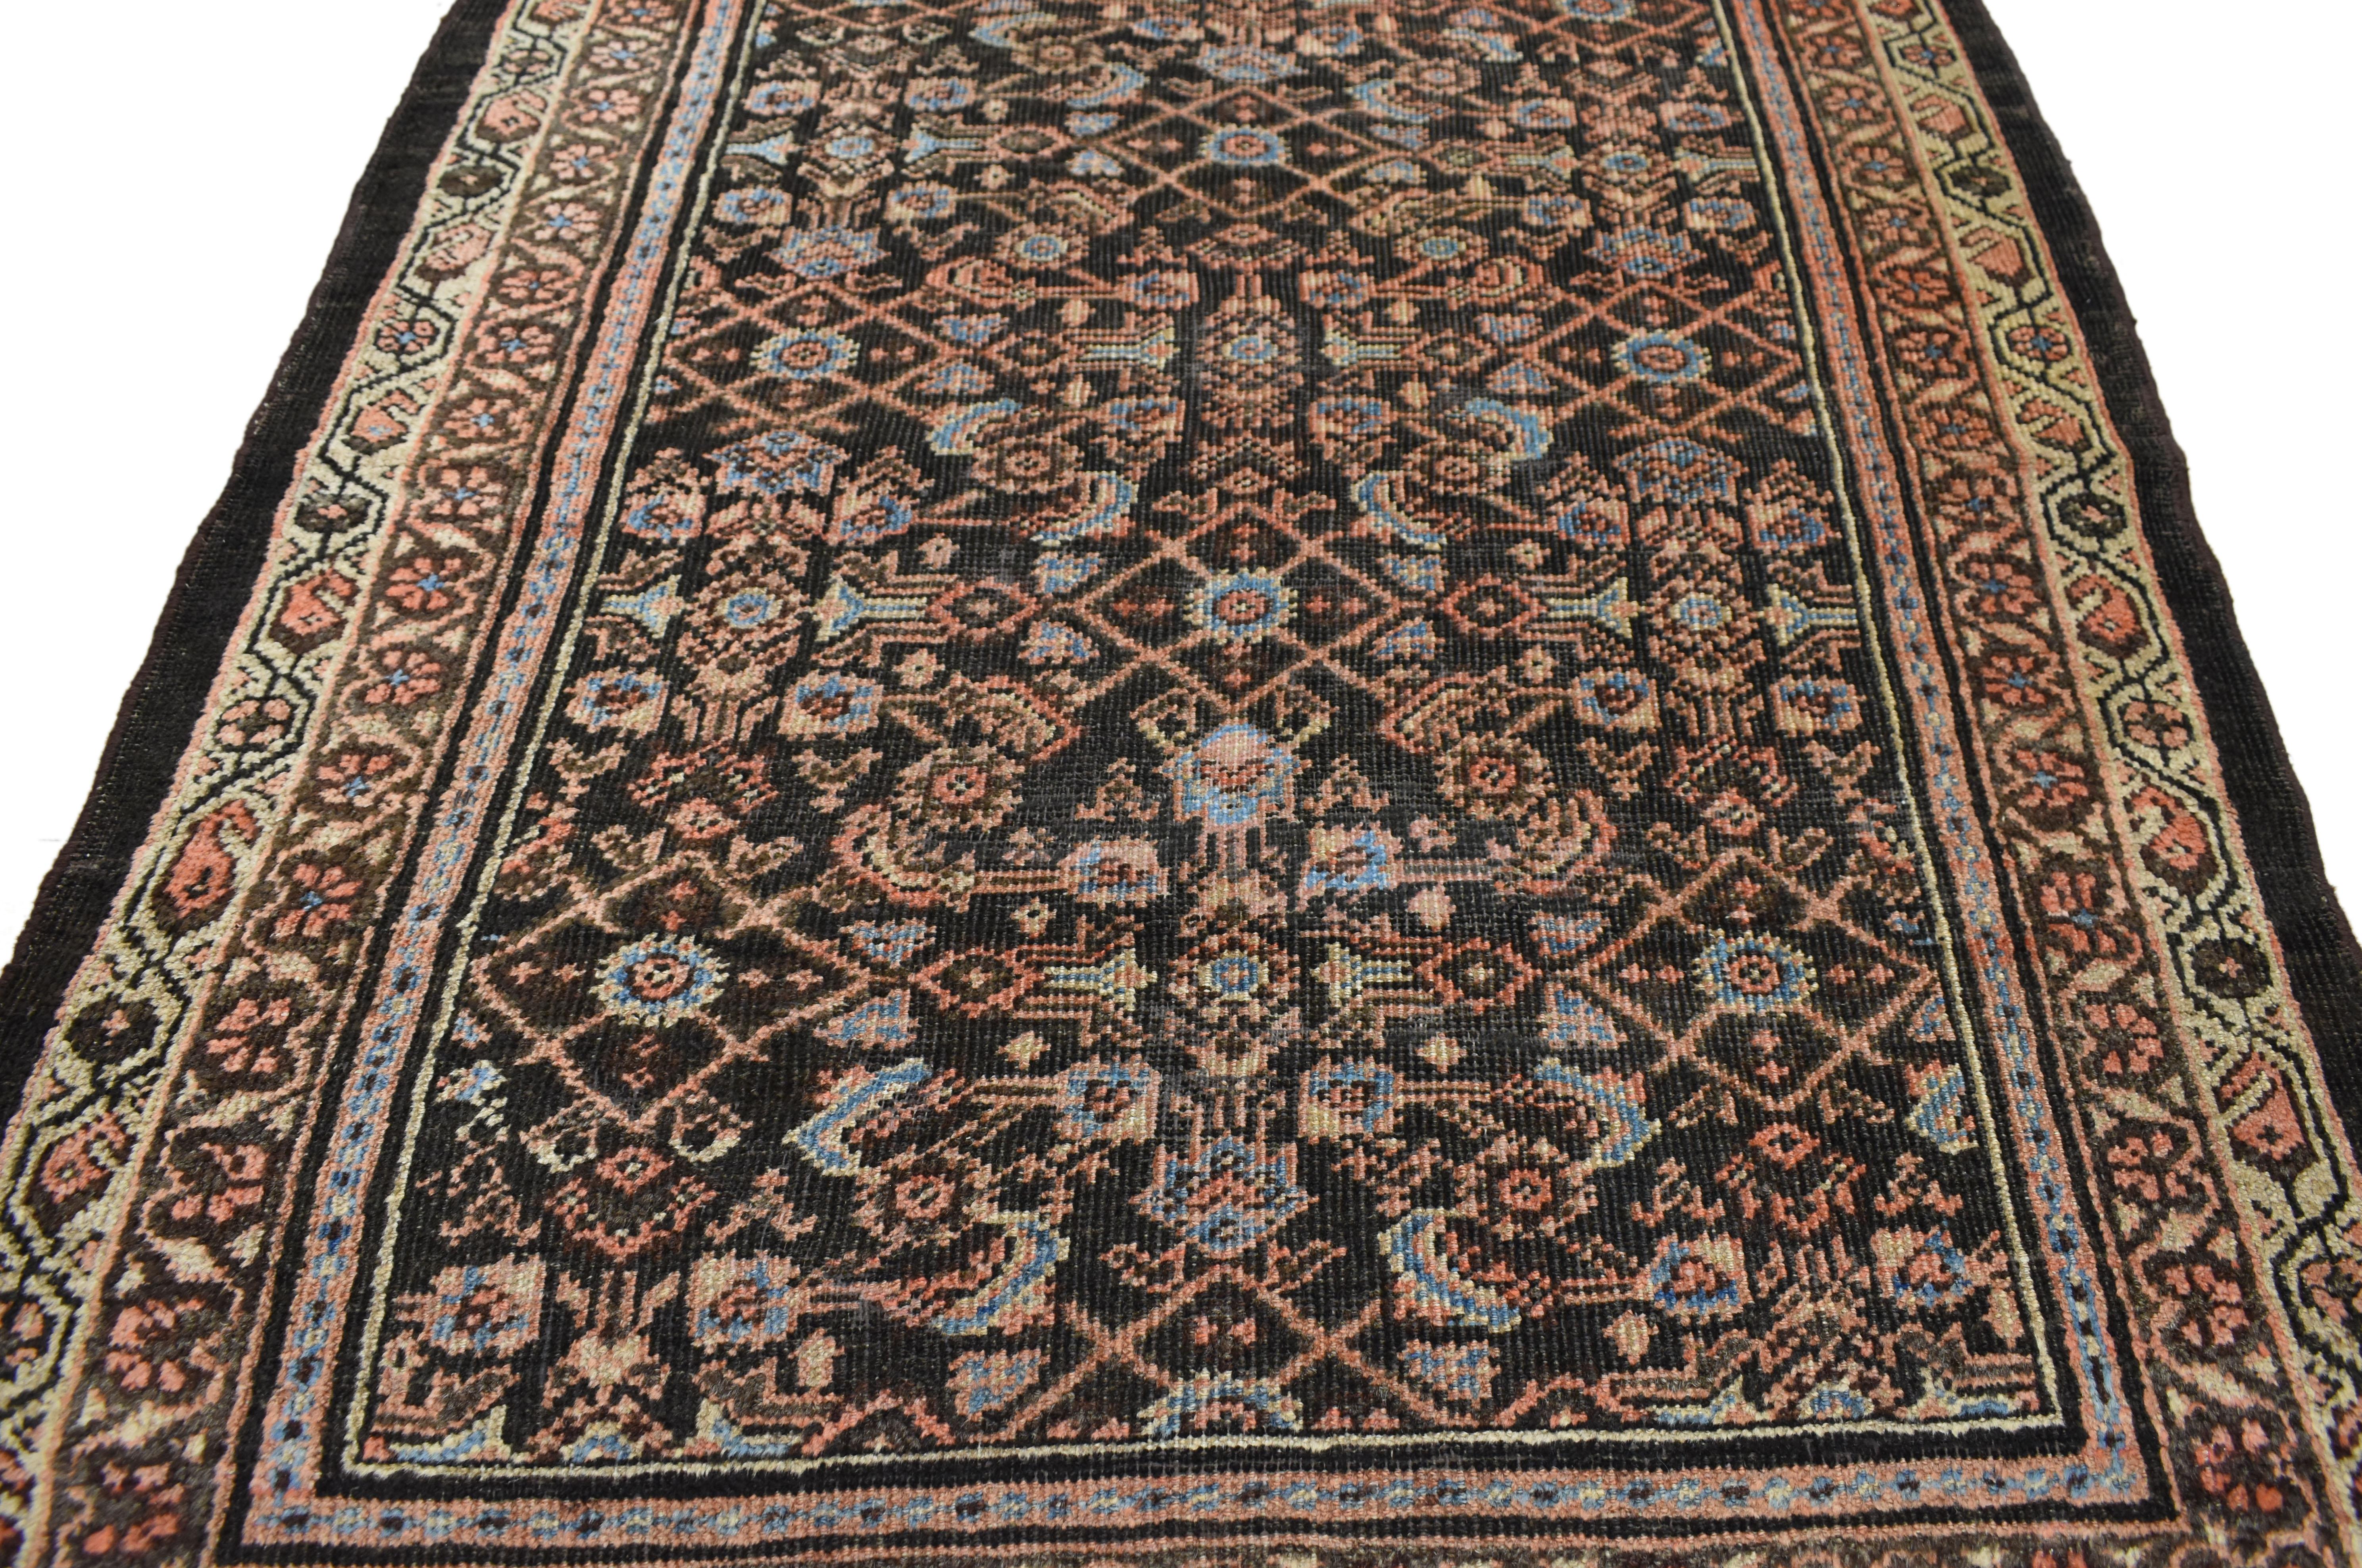 72354, ancien tapis persan Malayer, large tapis de couloir. Ce chemin de table Malayer en laine nouée à la main présente un motif Herati sur un champ de café abrasé. Une interprétation très stylisée du motif classique remplit densément le champ avec